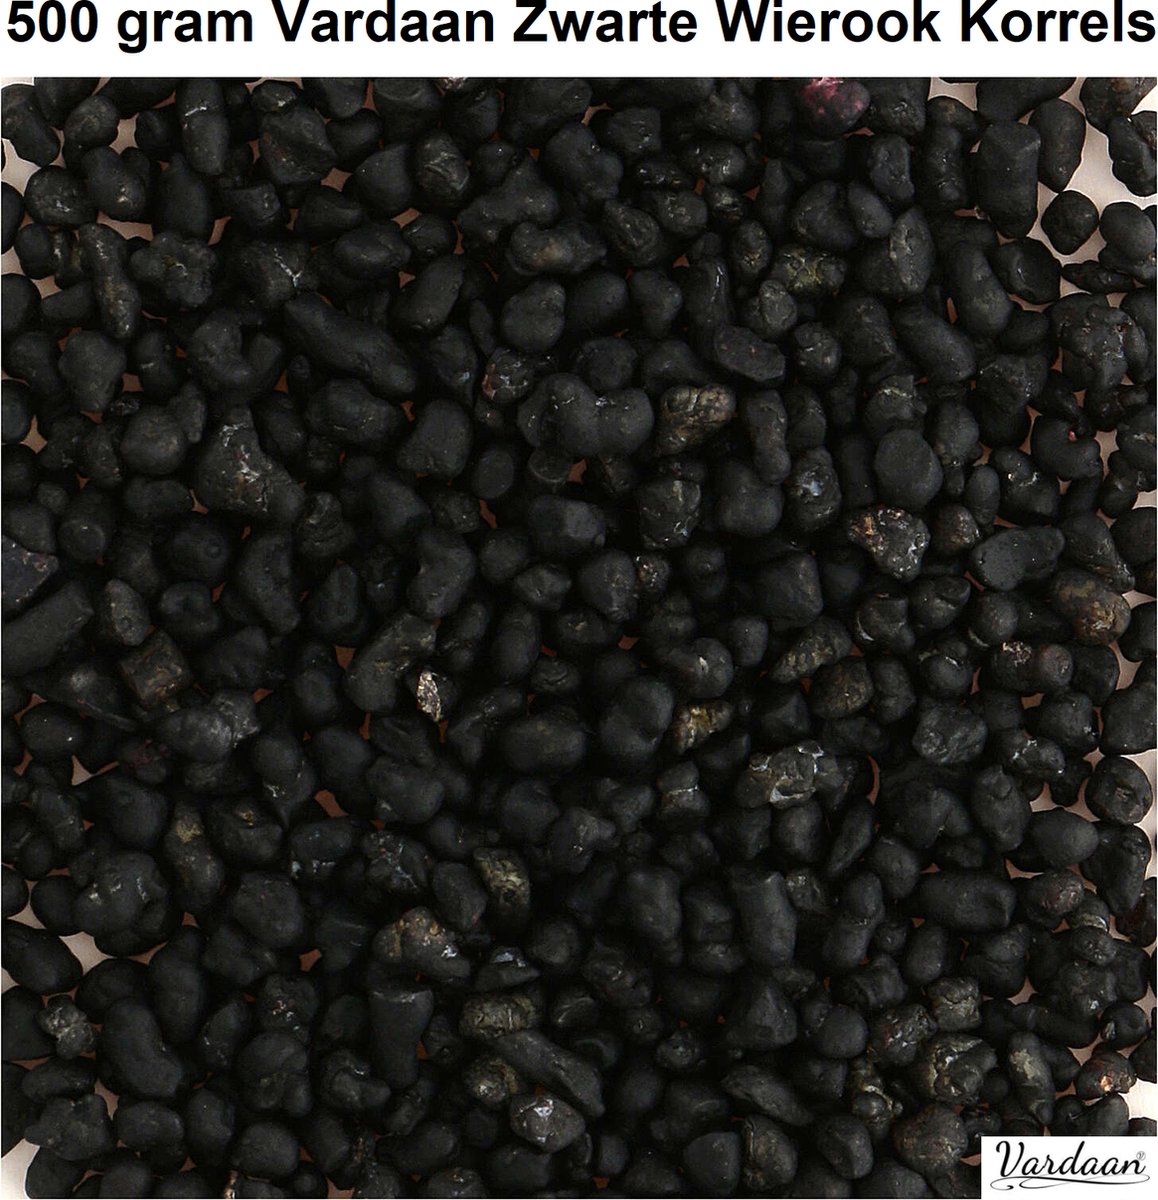 Zwarte Wierook Korrels - Originele Liturgische Wierook Korrels - Natuurlijk - Vardaan Wierook Korrels - Bevat Etherische Oliën & Extracten van Bloemen - 500 gram